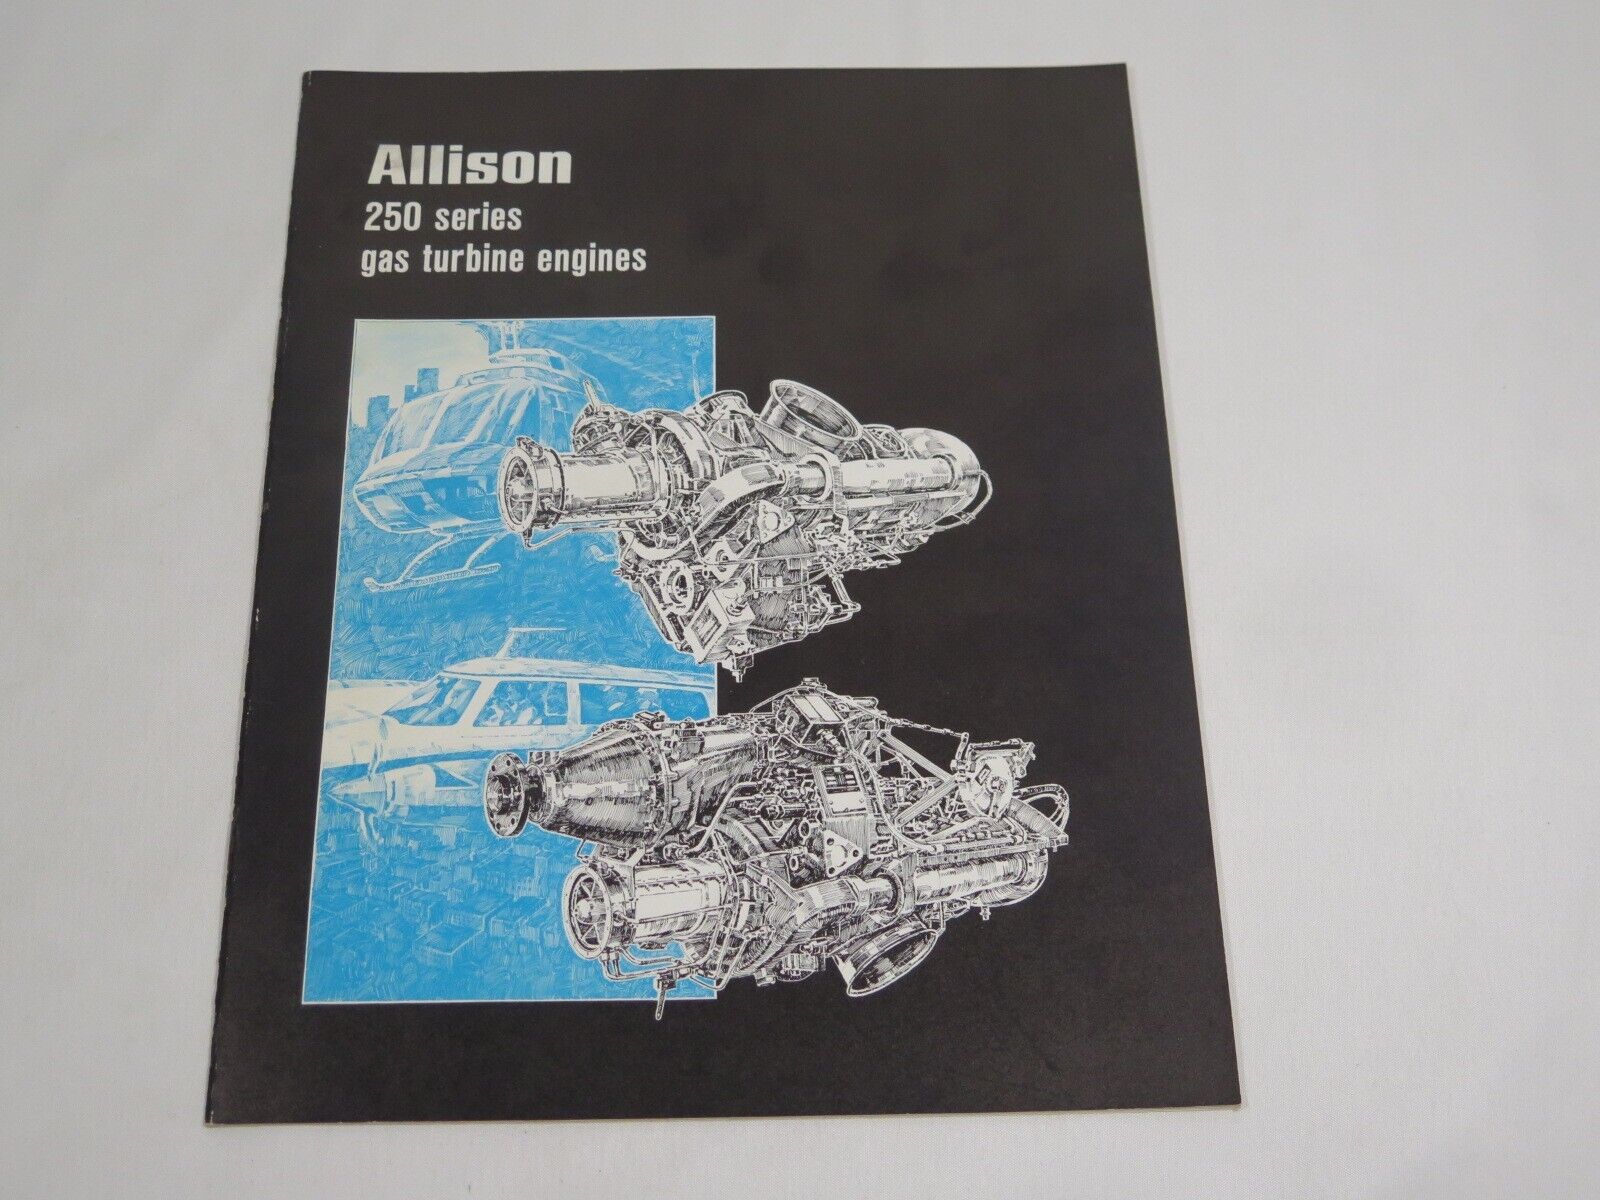 Allison 250 series gas turbine engines booklet